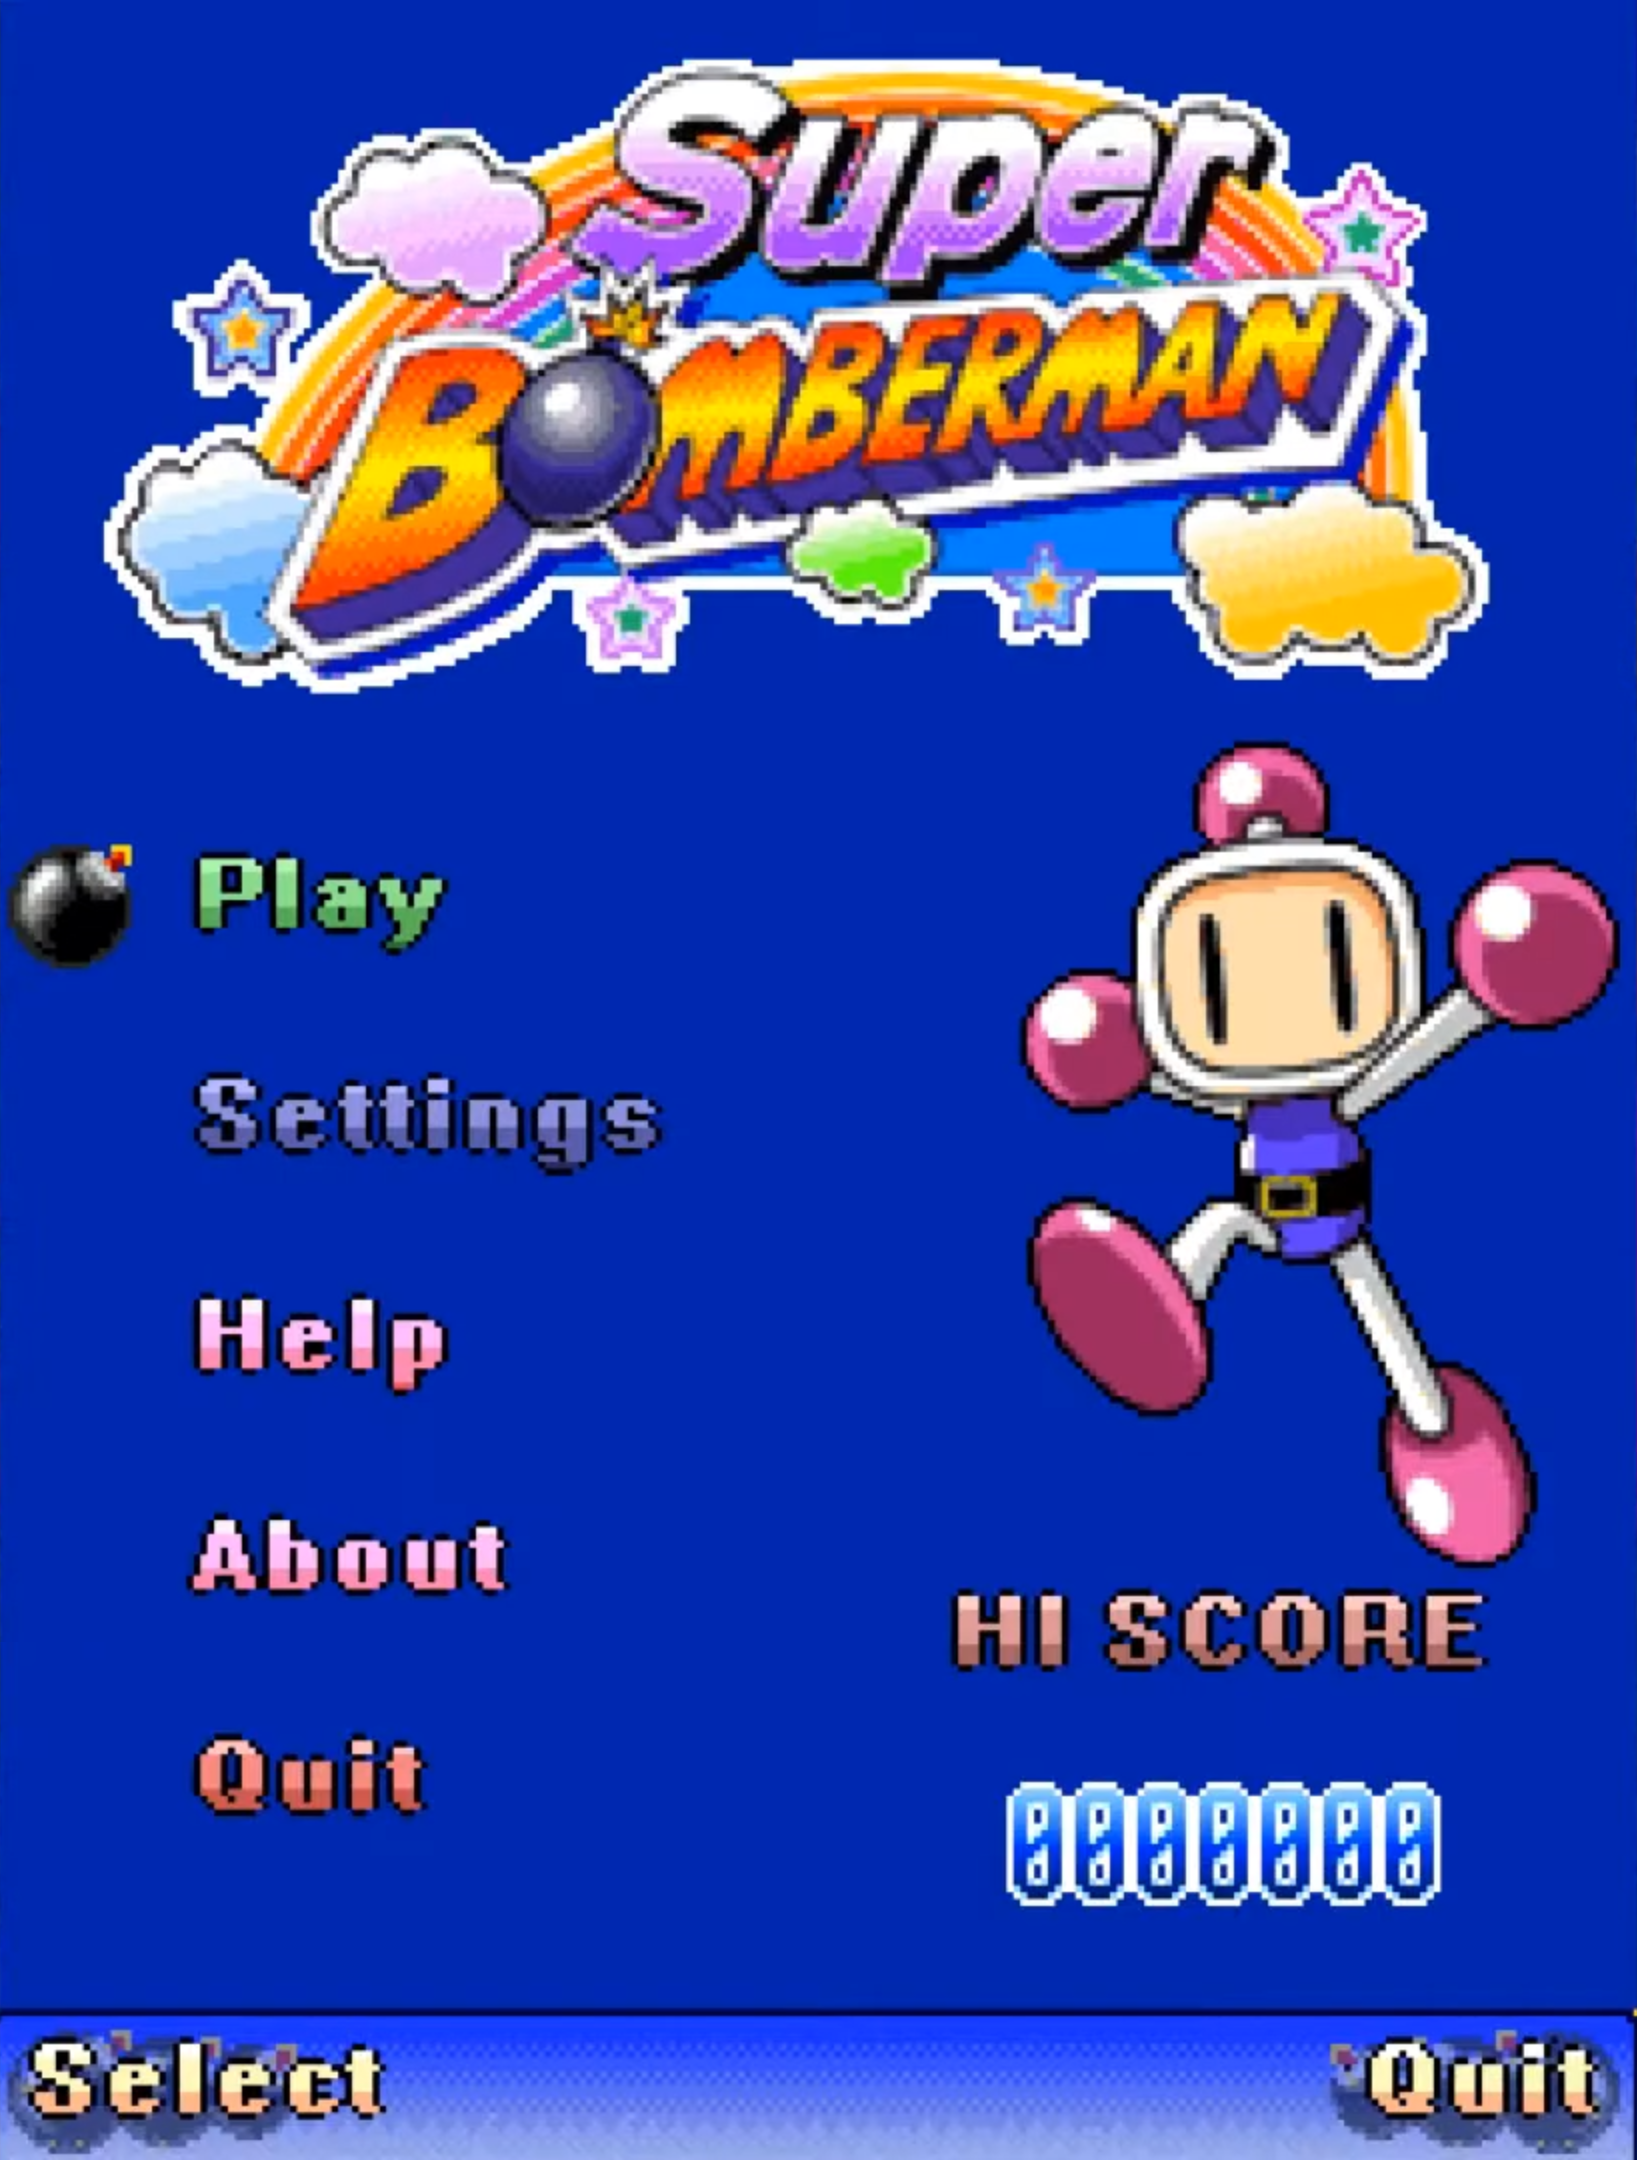 Bomberman - Wikipedia